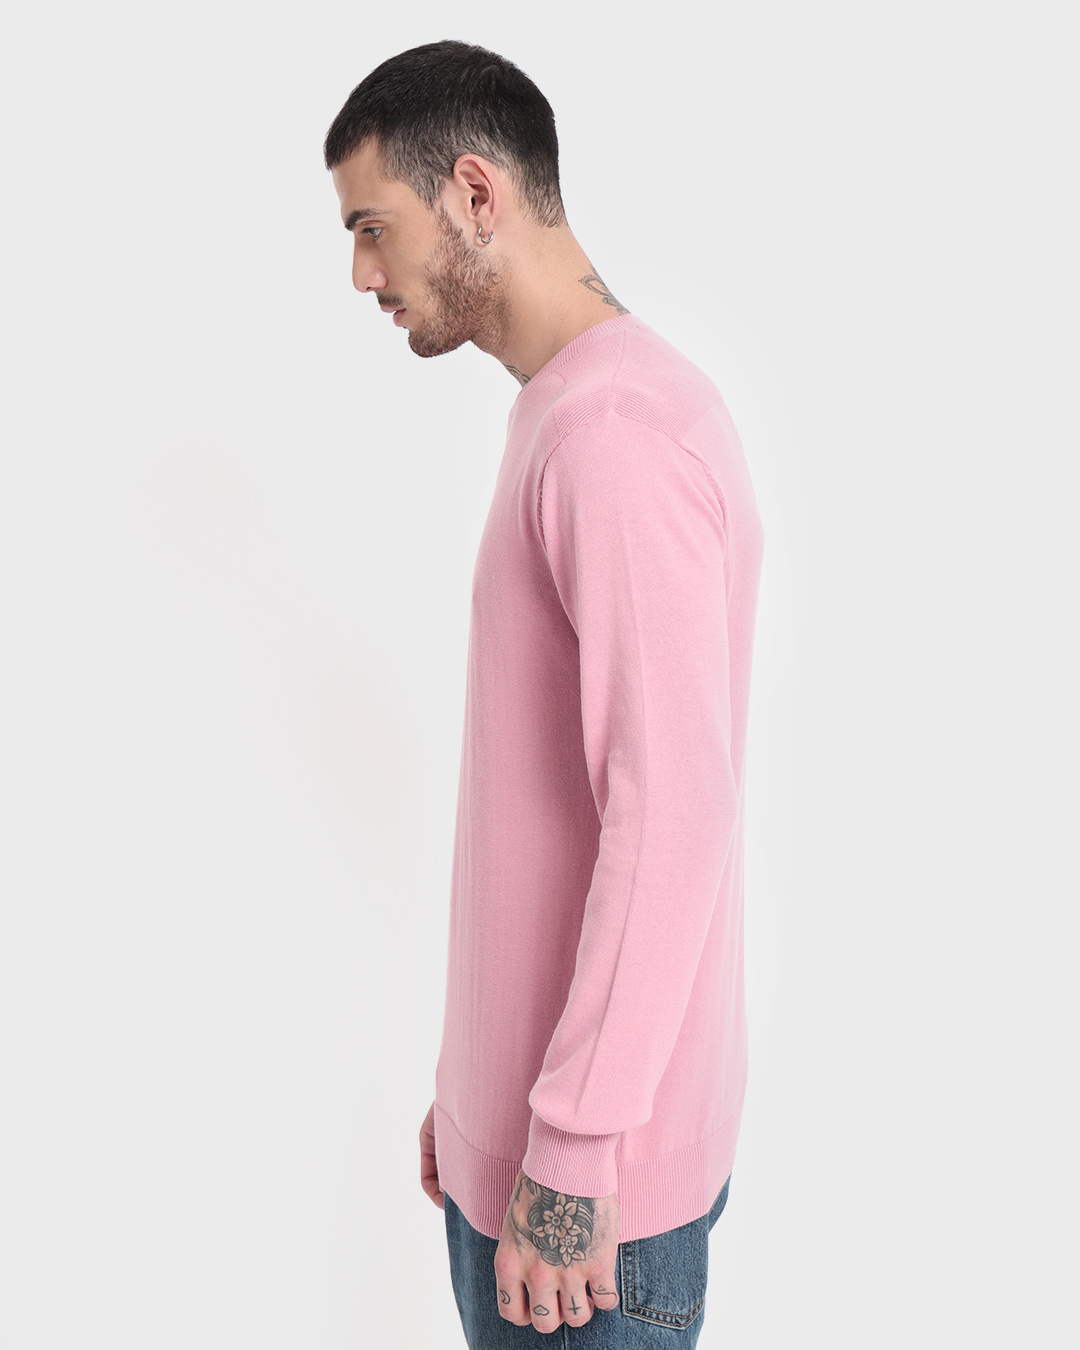 Shop Men's Pink Sweater-Back